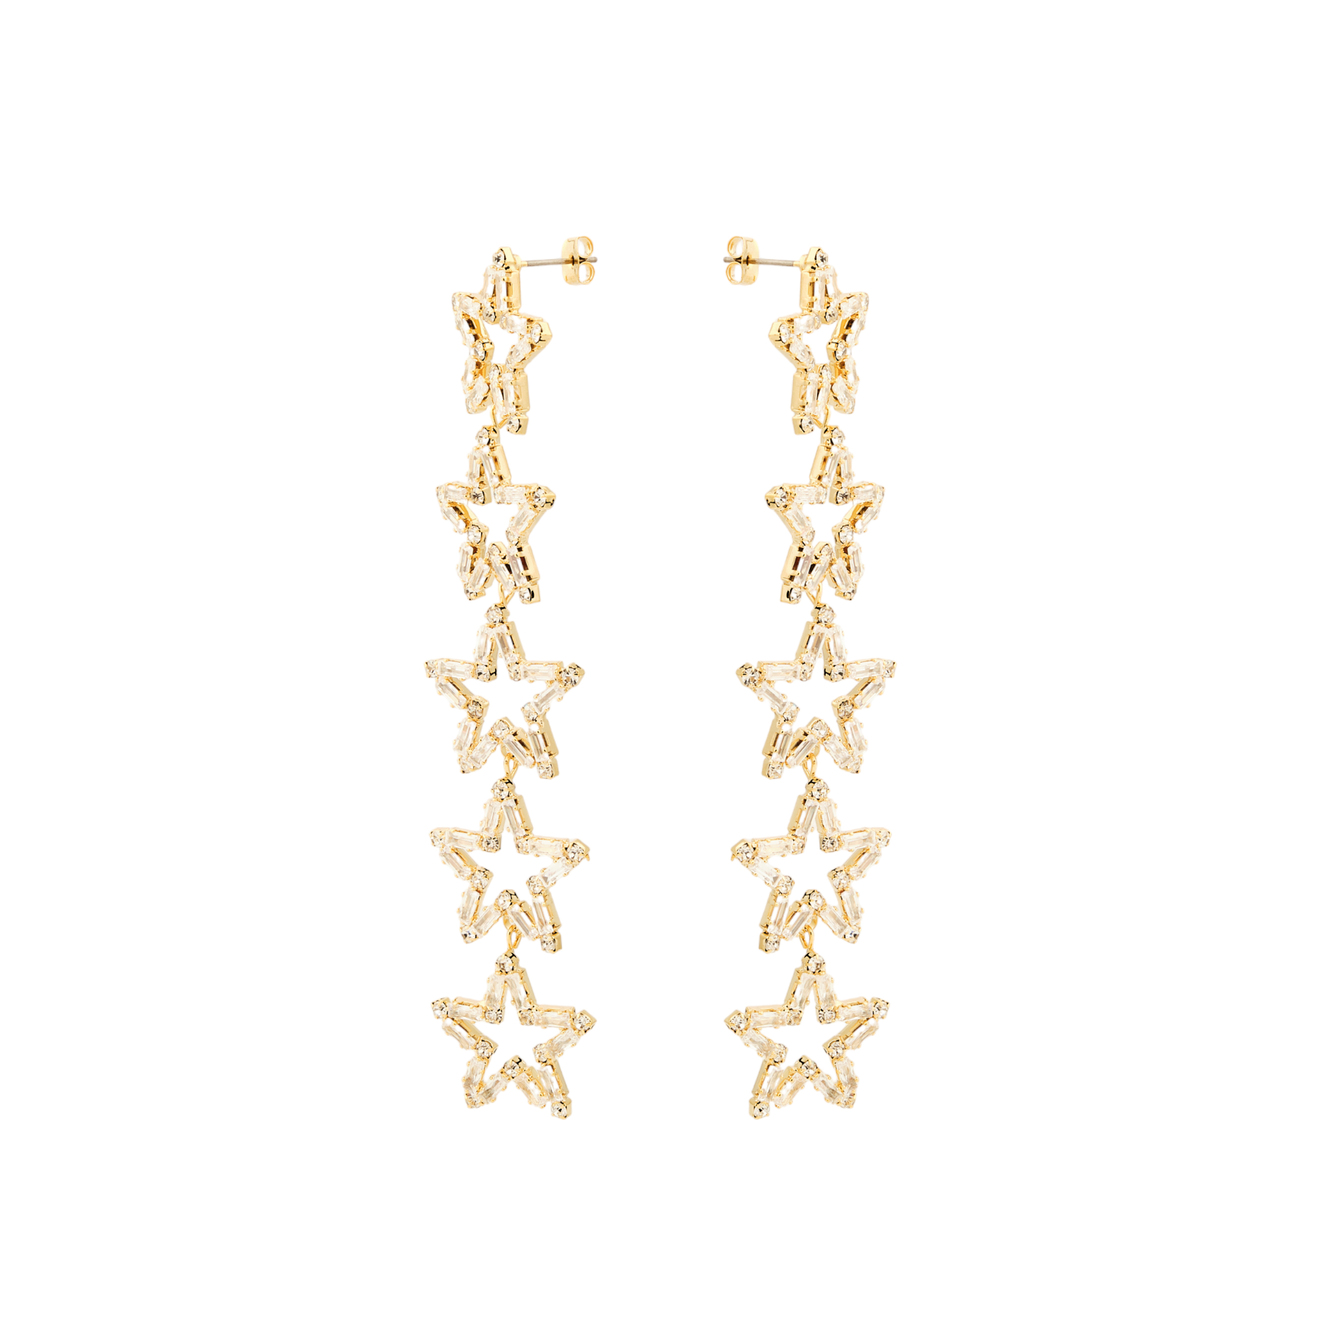 Herald Percy Золотистые длинные серьги с звездами с кристаллами herald percy золотистые серьги звезды с кристаллами